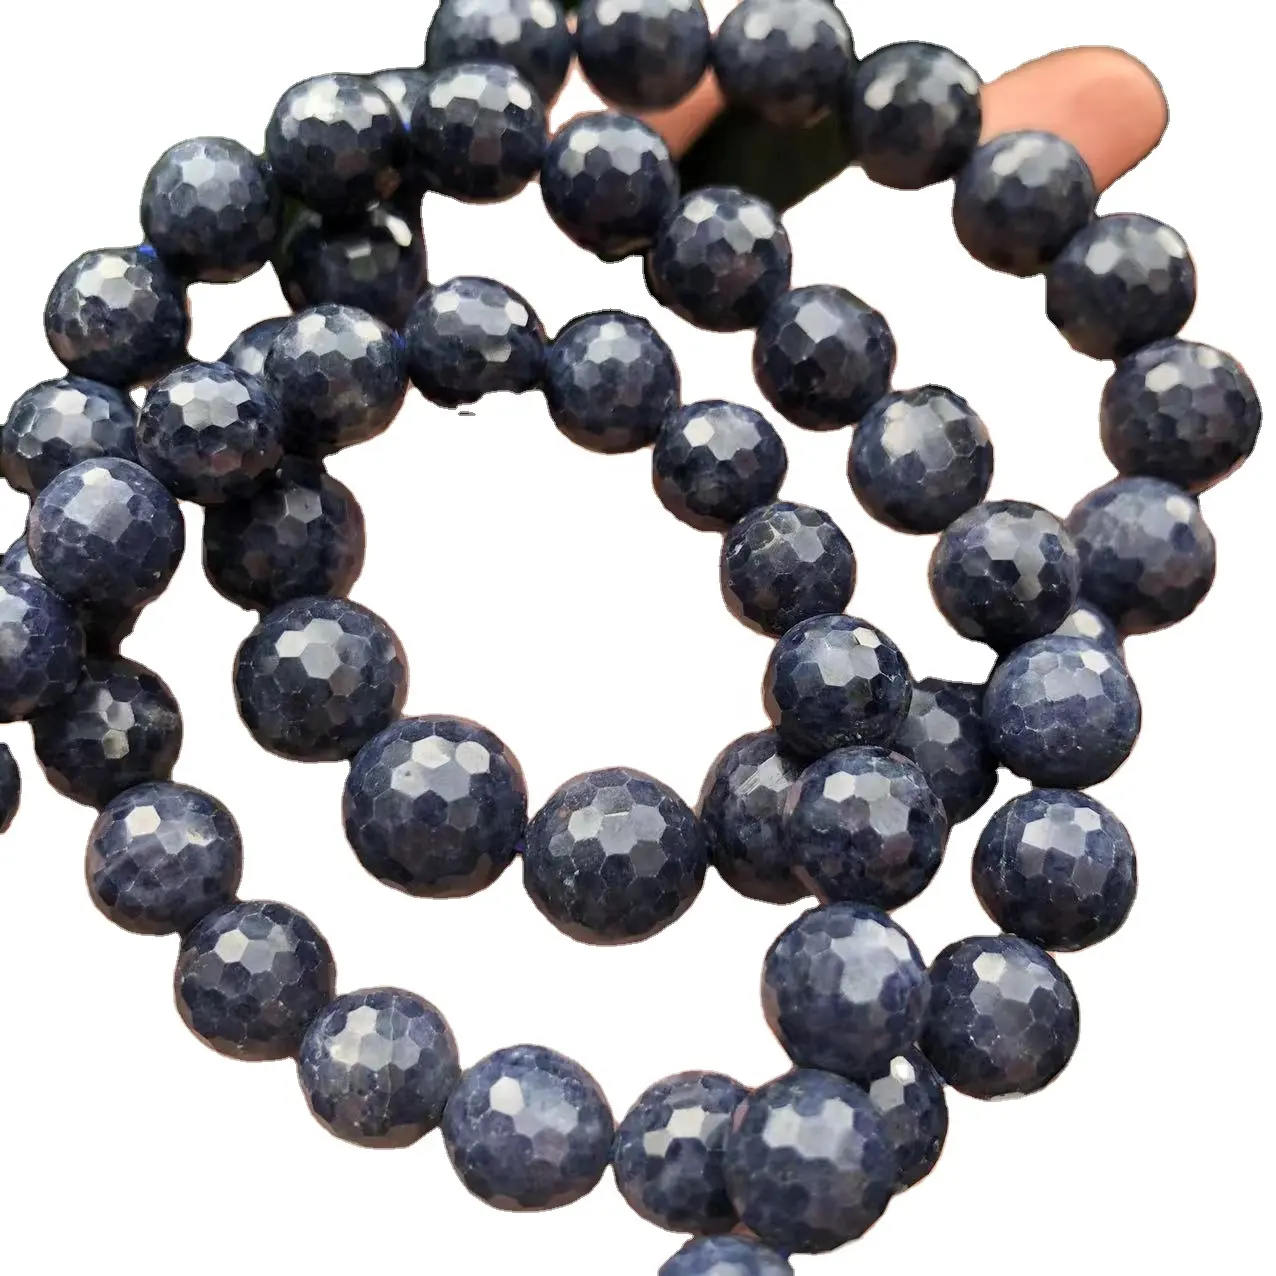 Натуральный настоящий Топ Синий сапфир граненый круглый полудрагоценный камень незакрепленный камень для изготовления ювелирных изделий дизайн